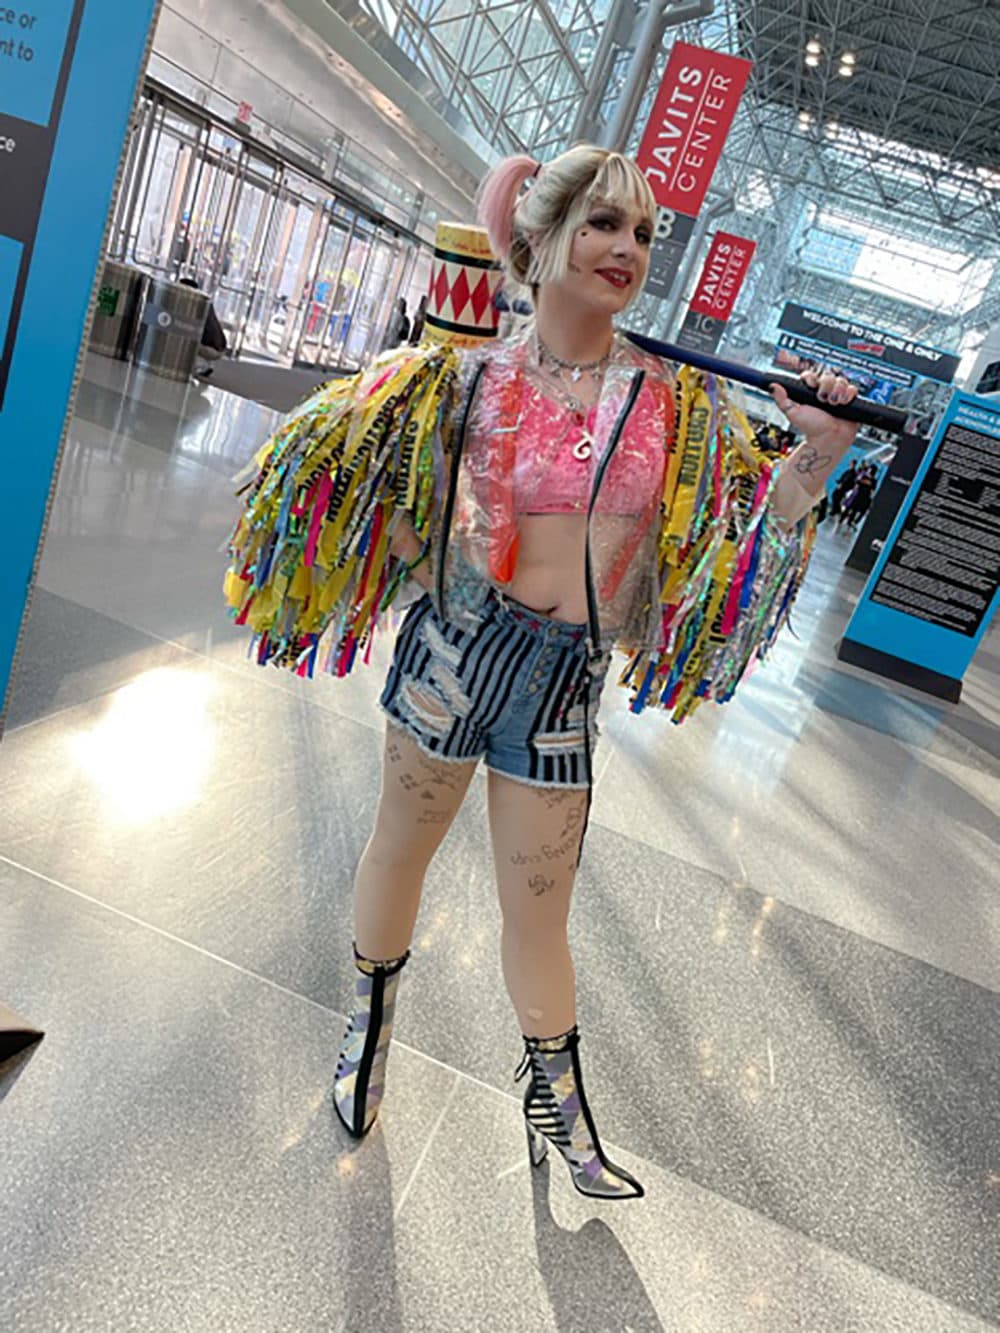 Harley Quinn at Comic Con. (Petra Mayer)